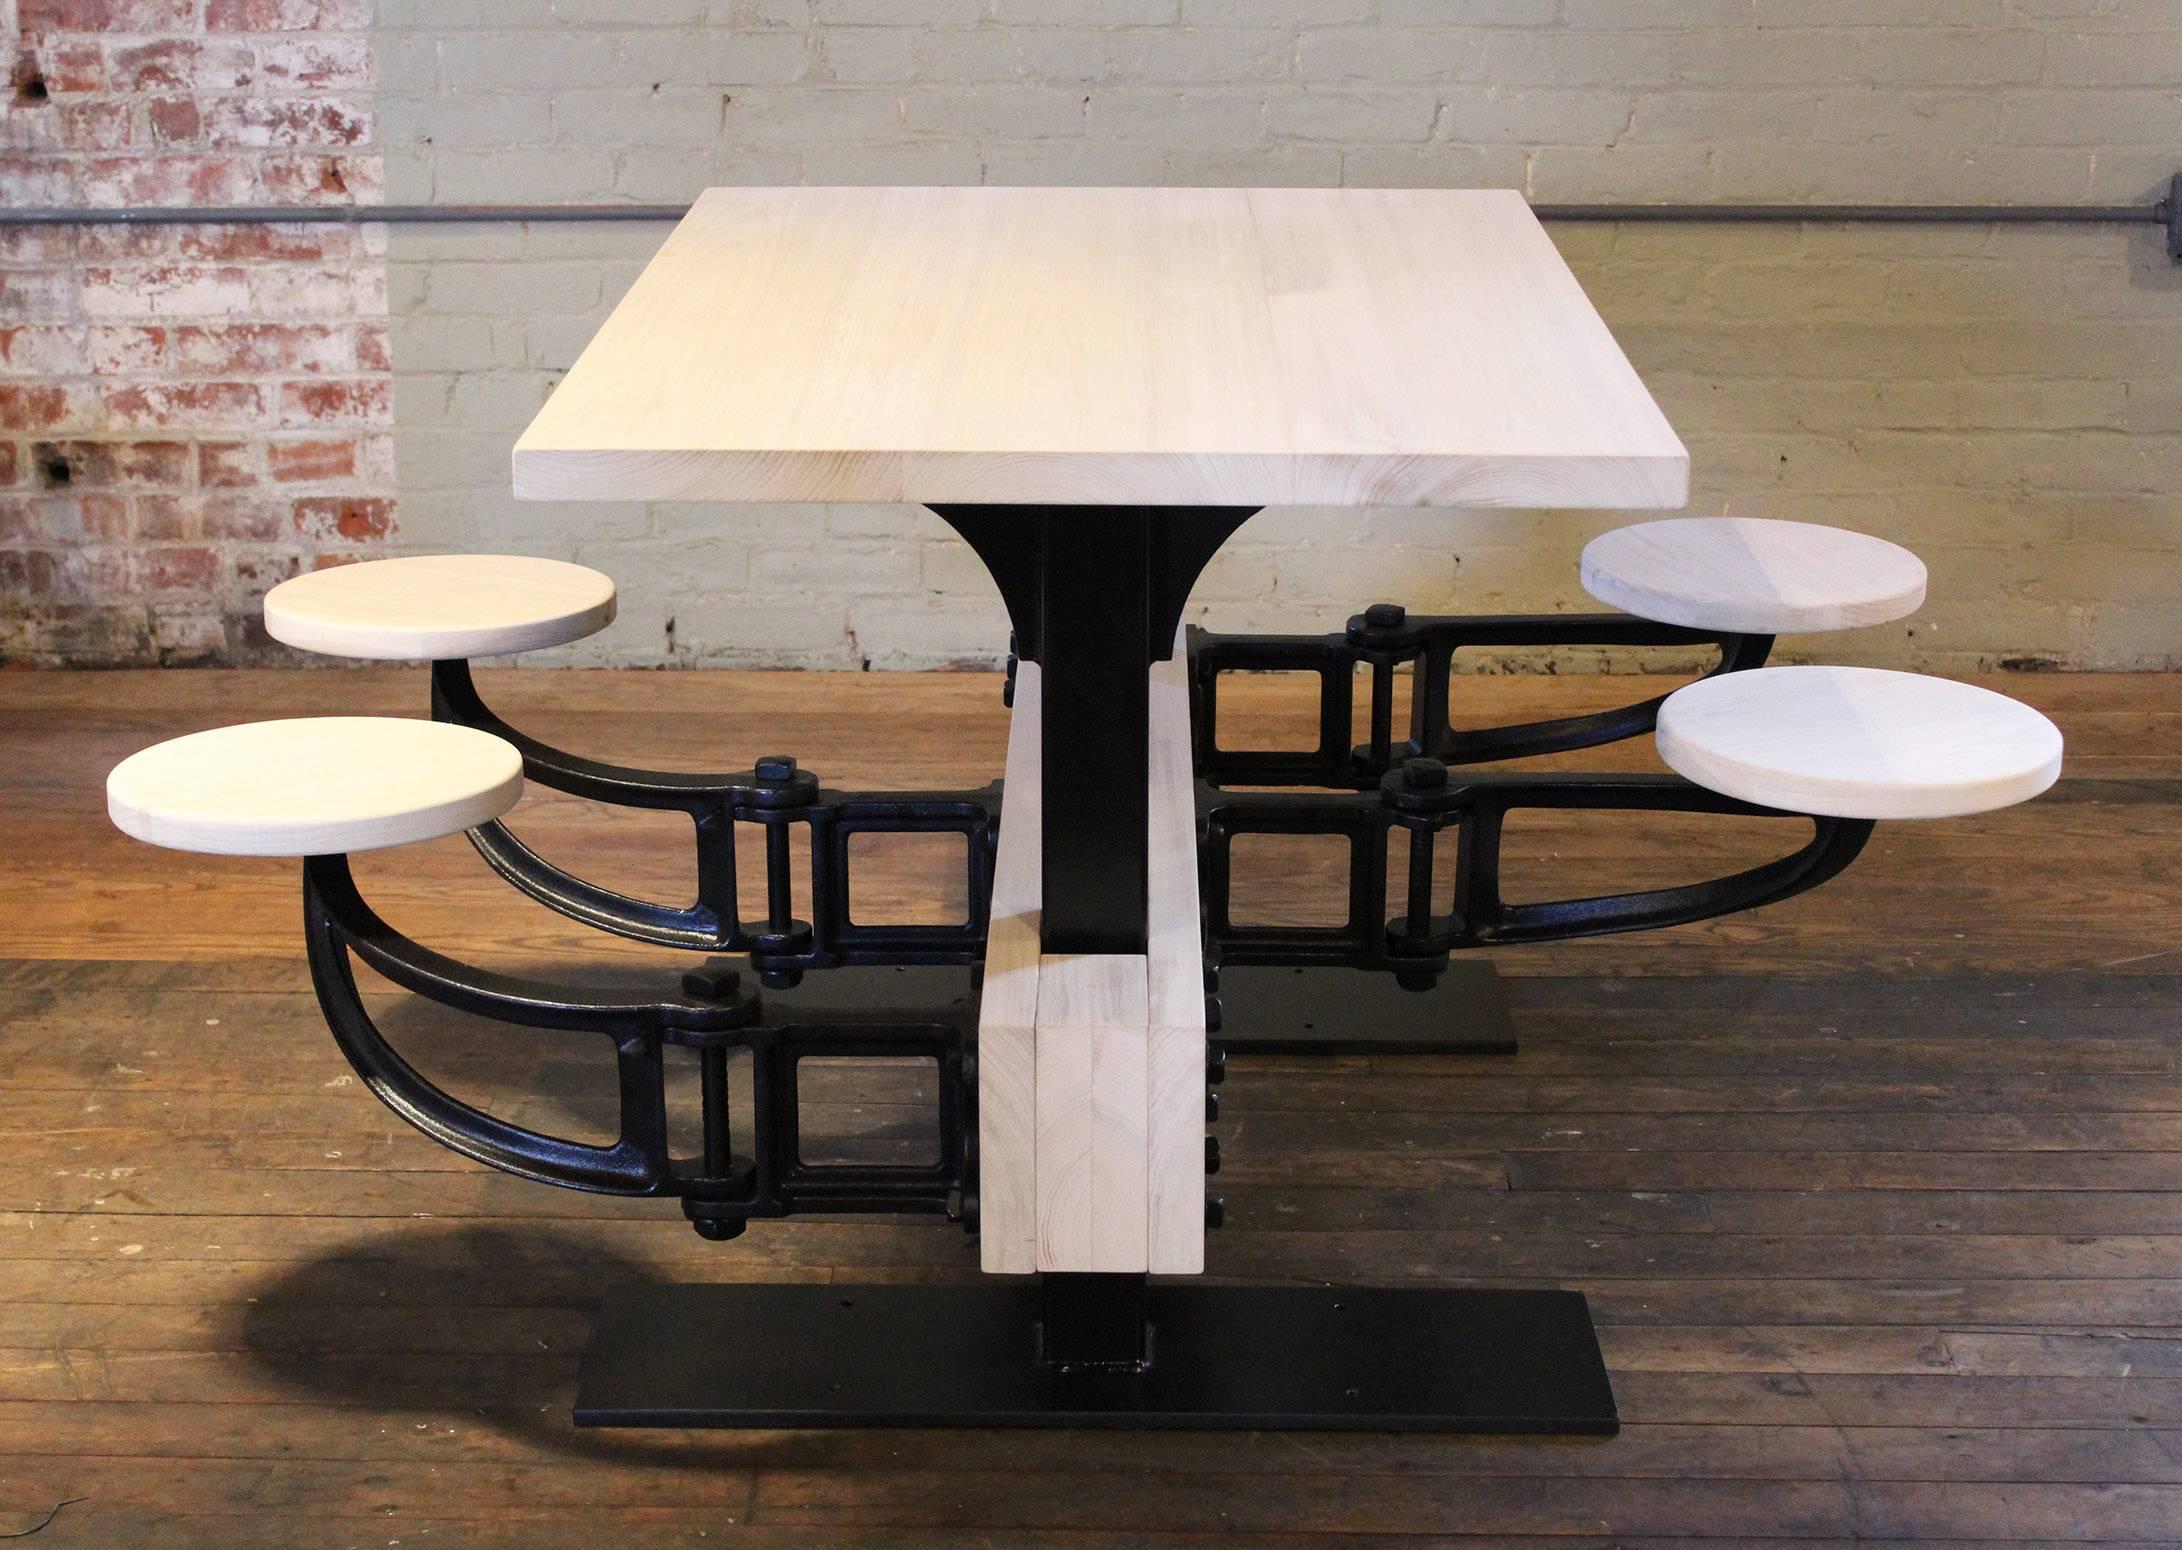 Vieille table de cuisine industrielle en fonte, acier et bois, avec siège pivotant, style cafétéria. Le dessus mesure 1 1/4